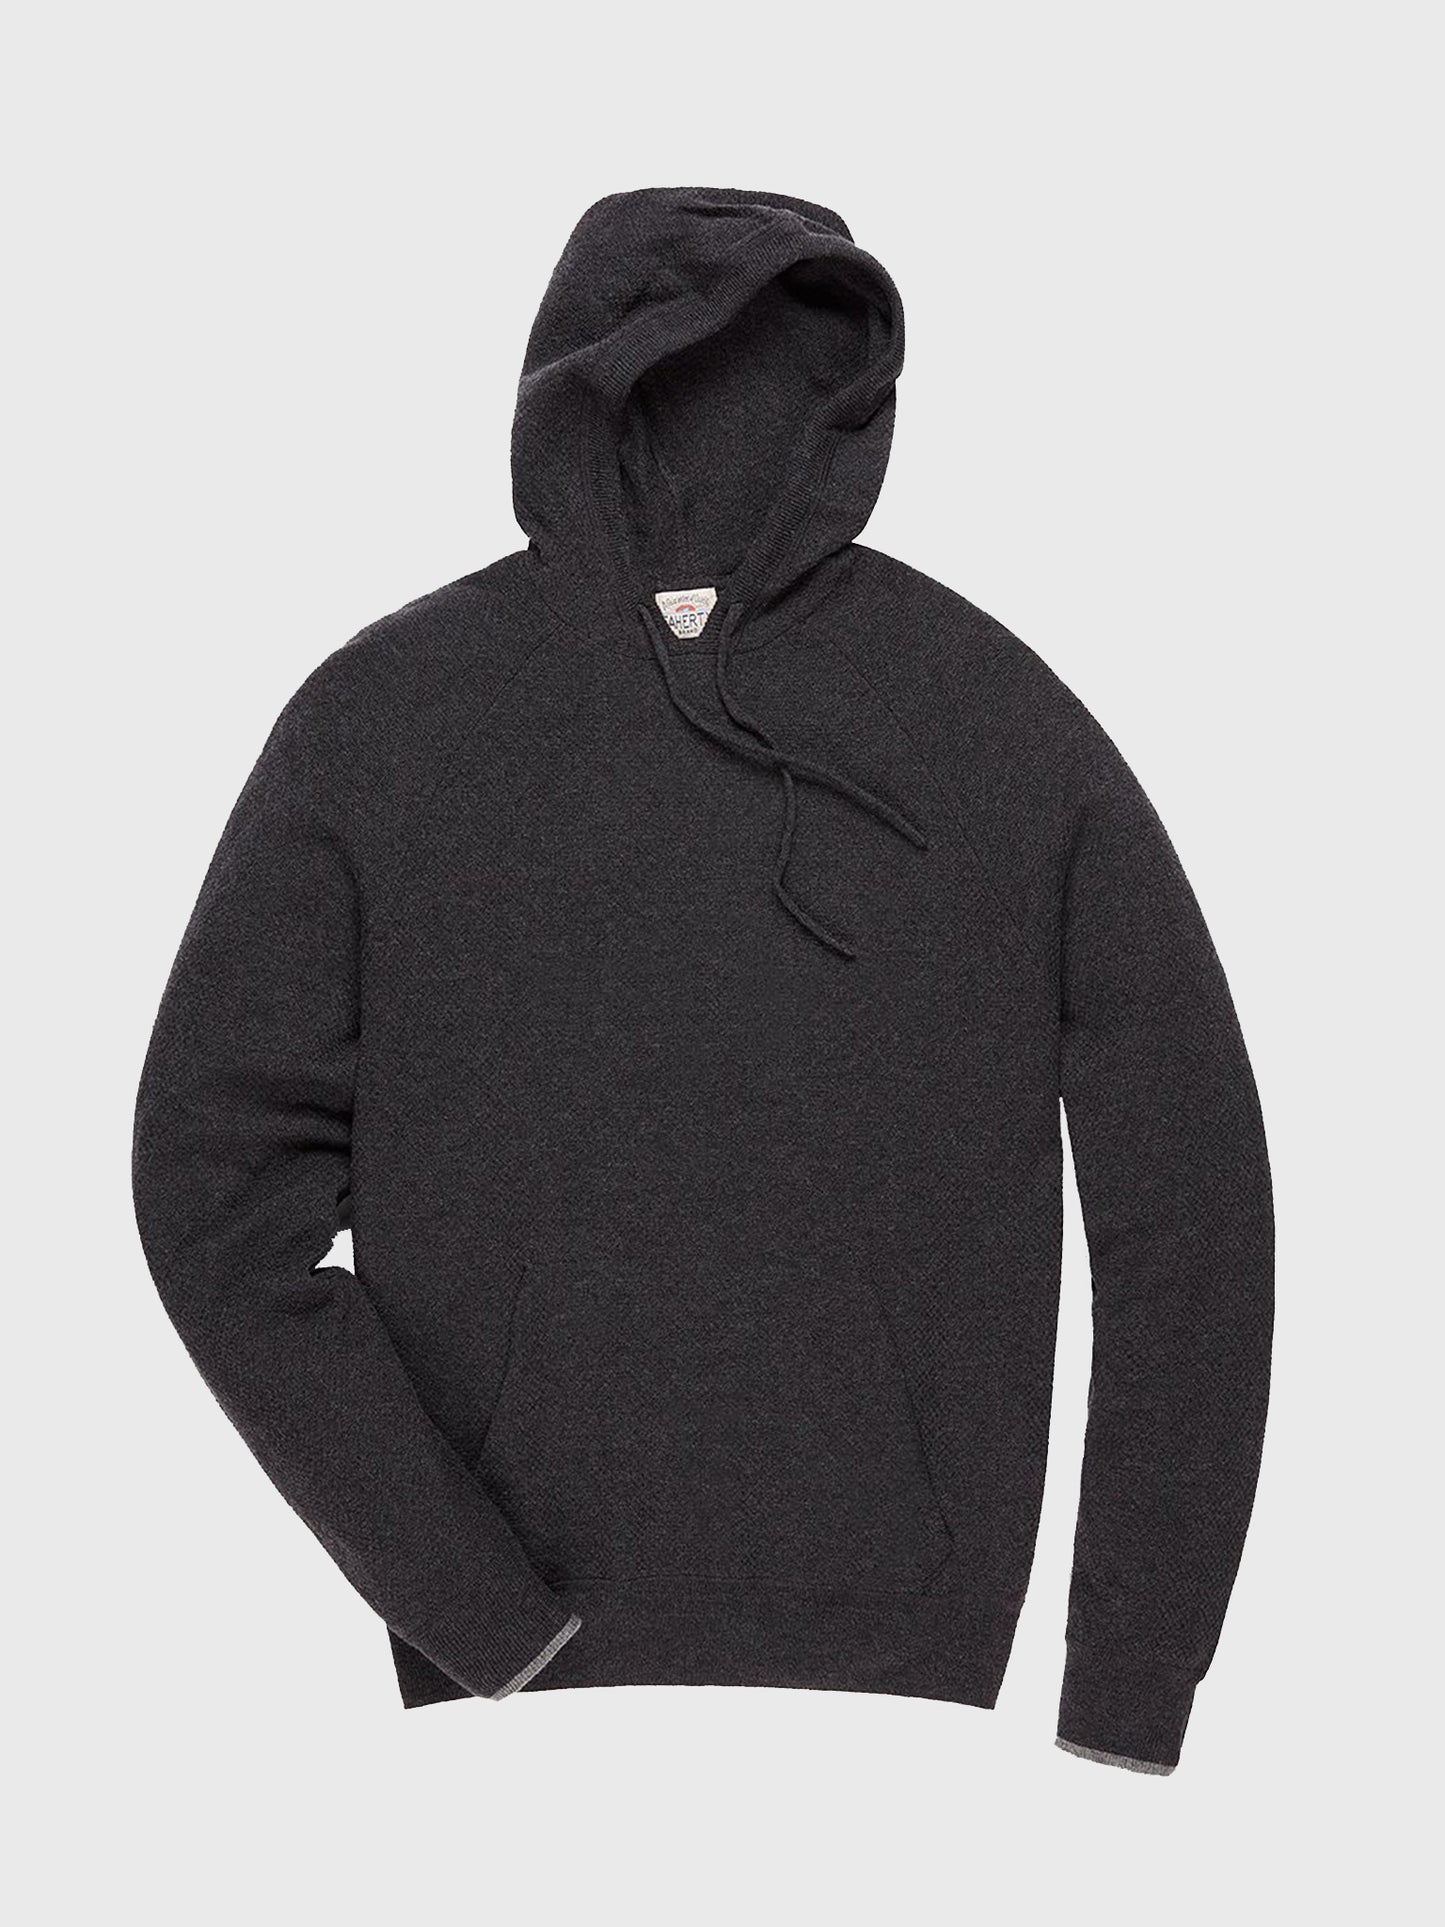 Faherty Brand Men's Mirage Hoodie Sweater